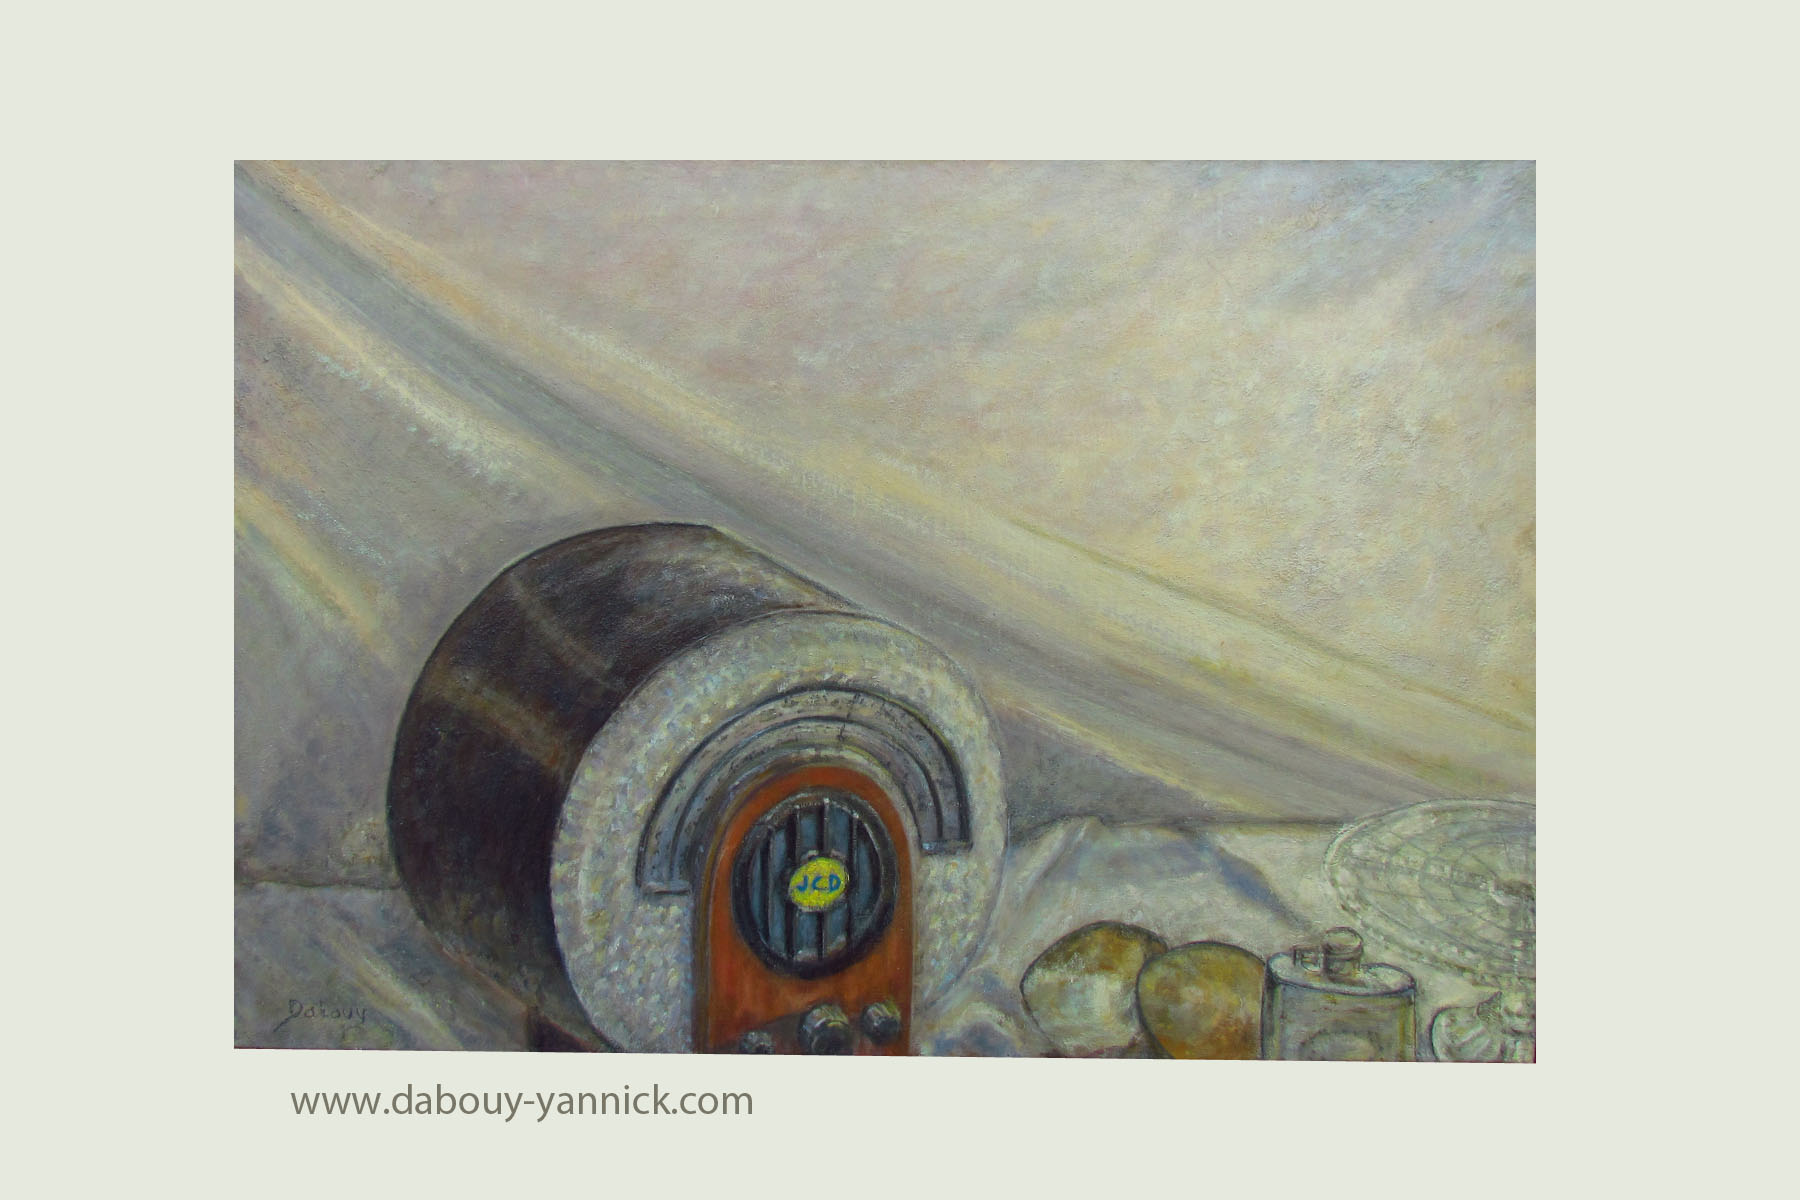 Excés : Peinture à l'huile sur toile / 73/50cm / année : 2013